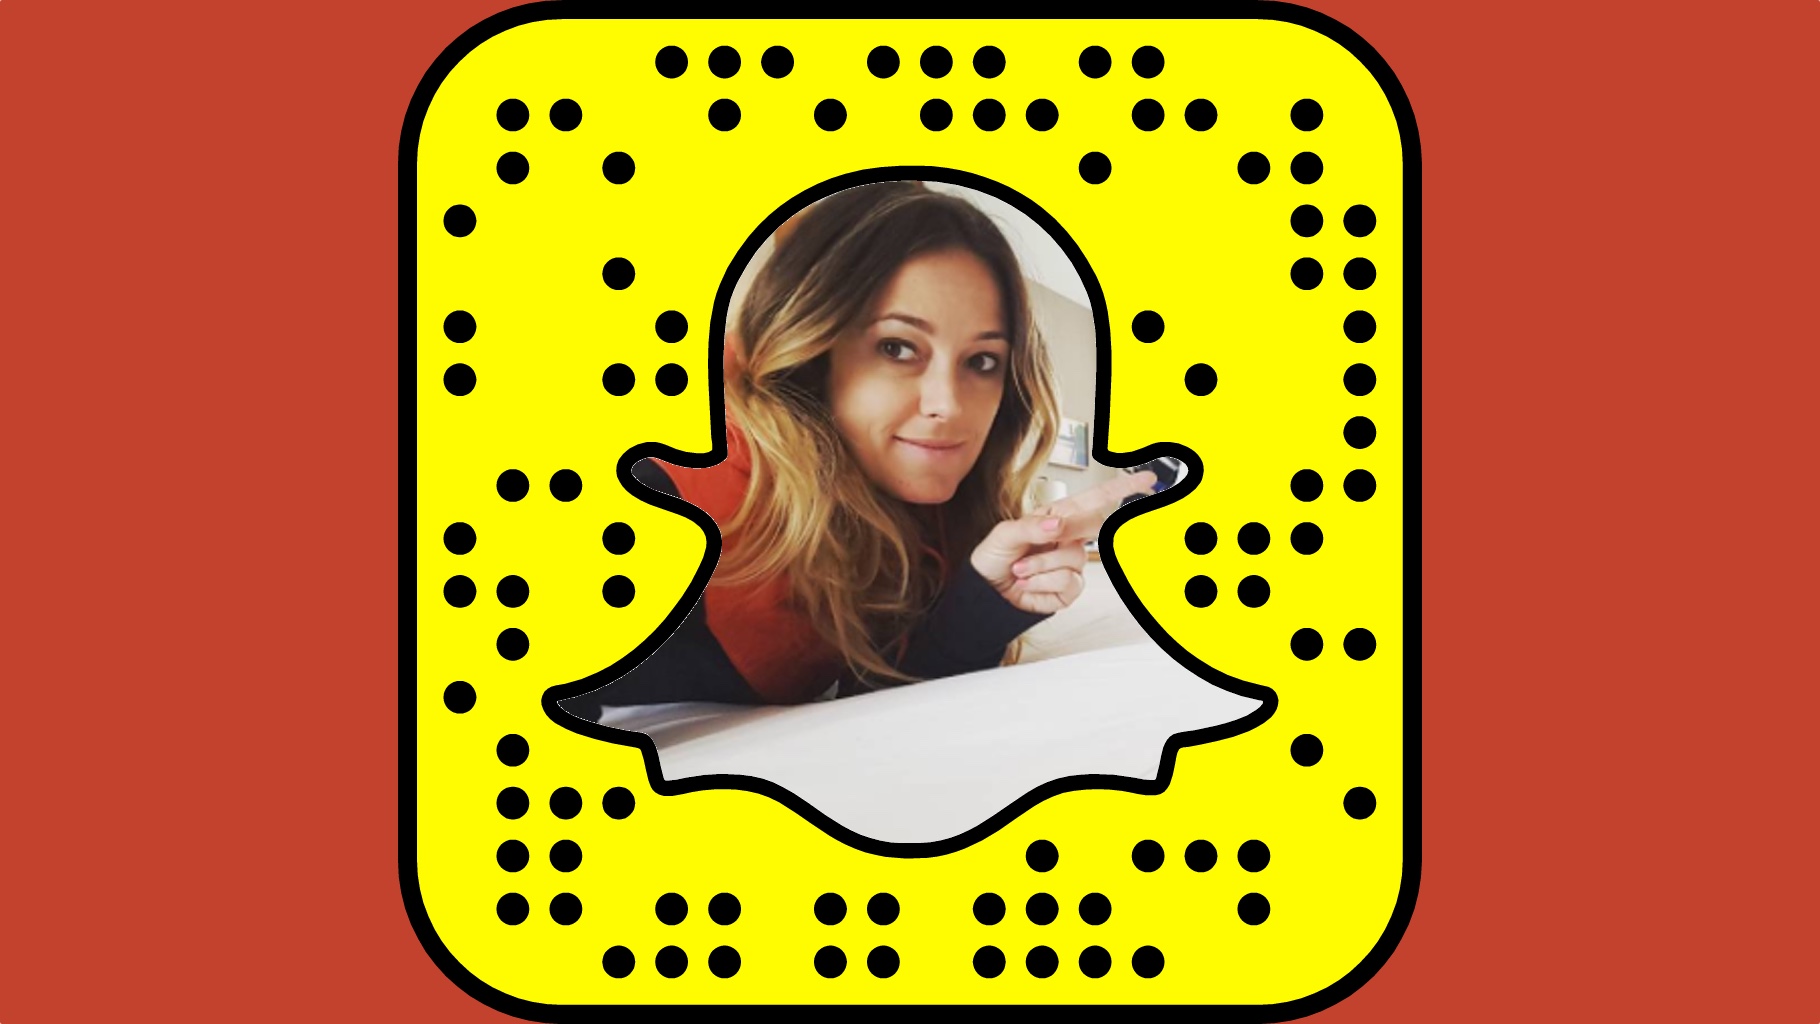 Xoyessica Snapchat